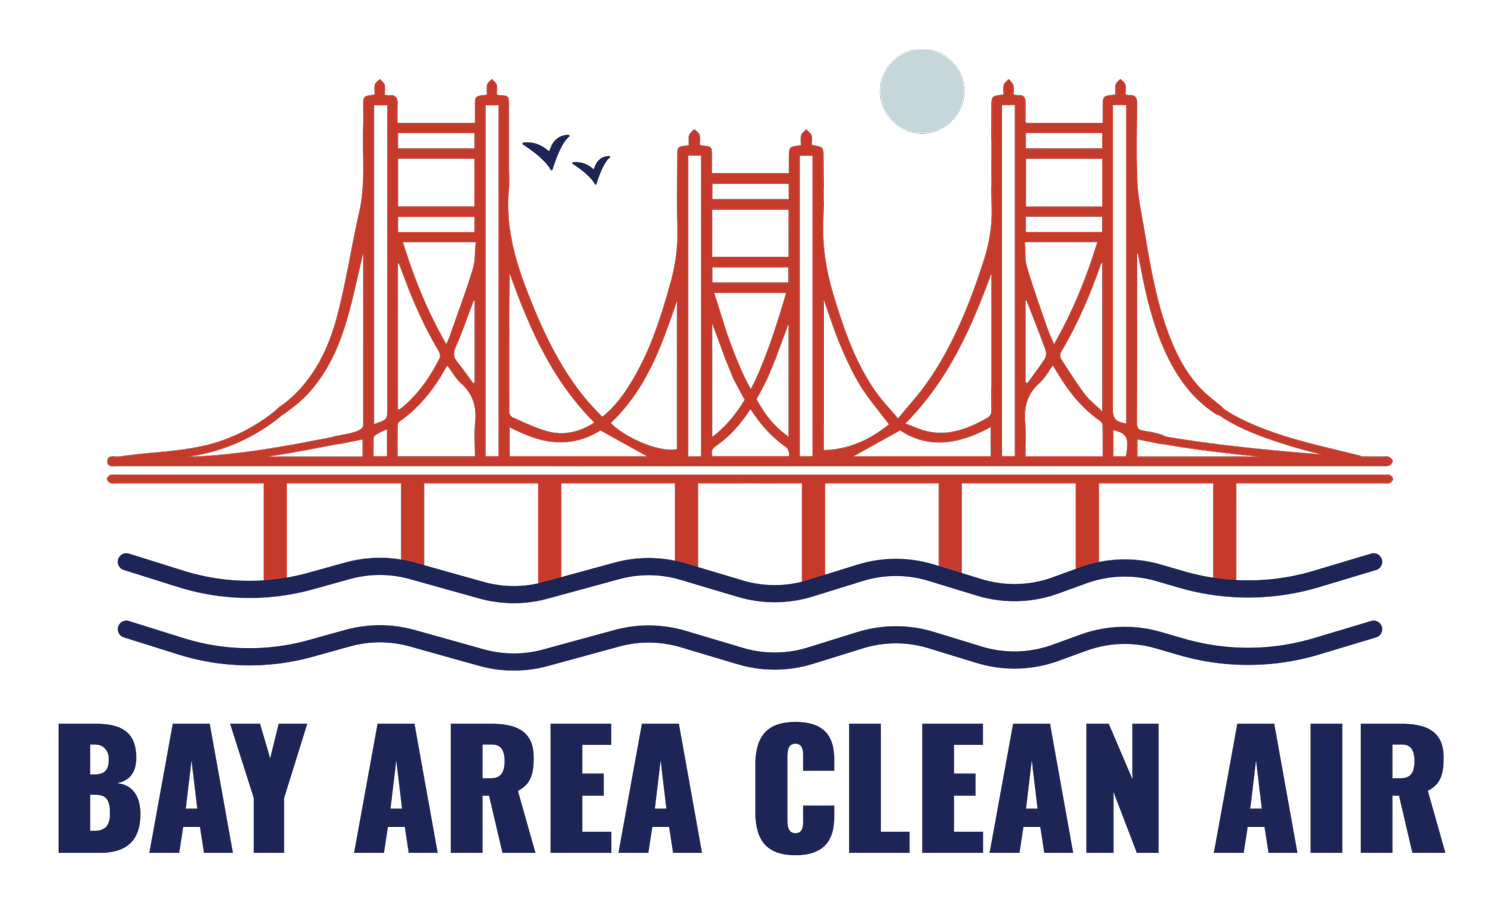 Bay Area Clean Air